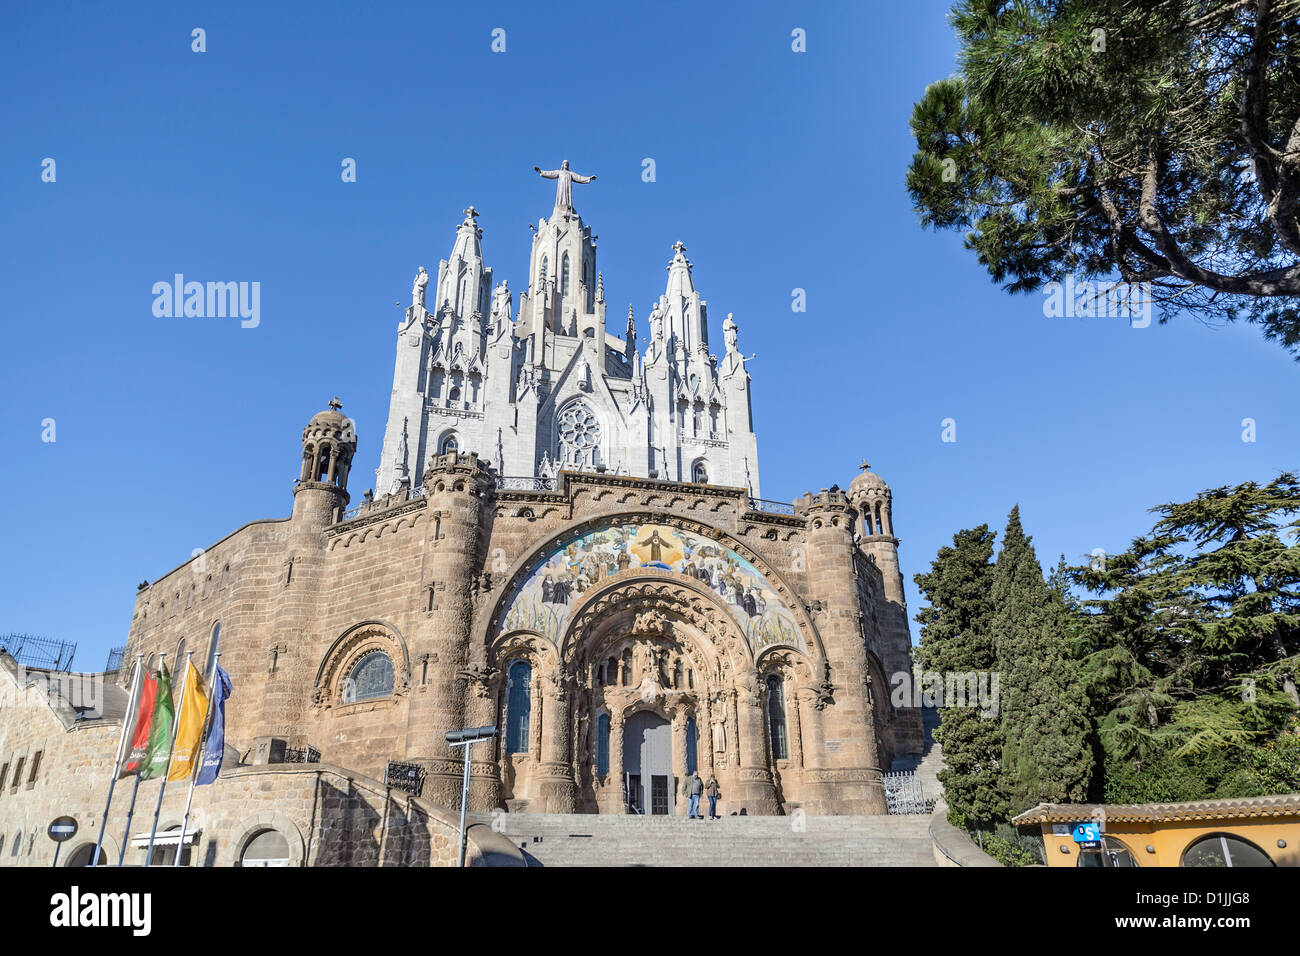 Temple expiatori del sagrat cor located in tibidabo,Barcelona Stock Photo